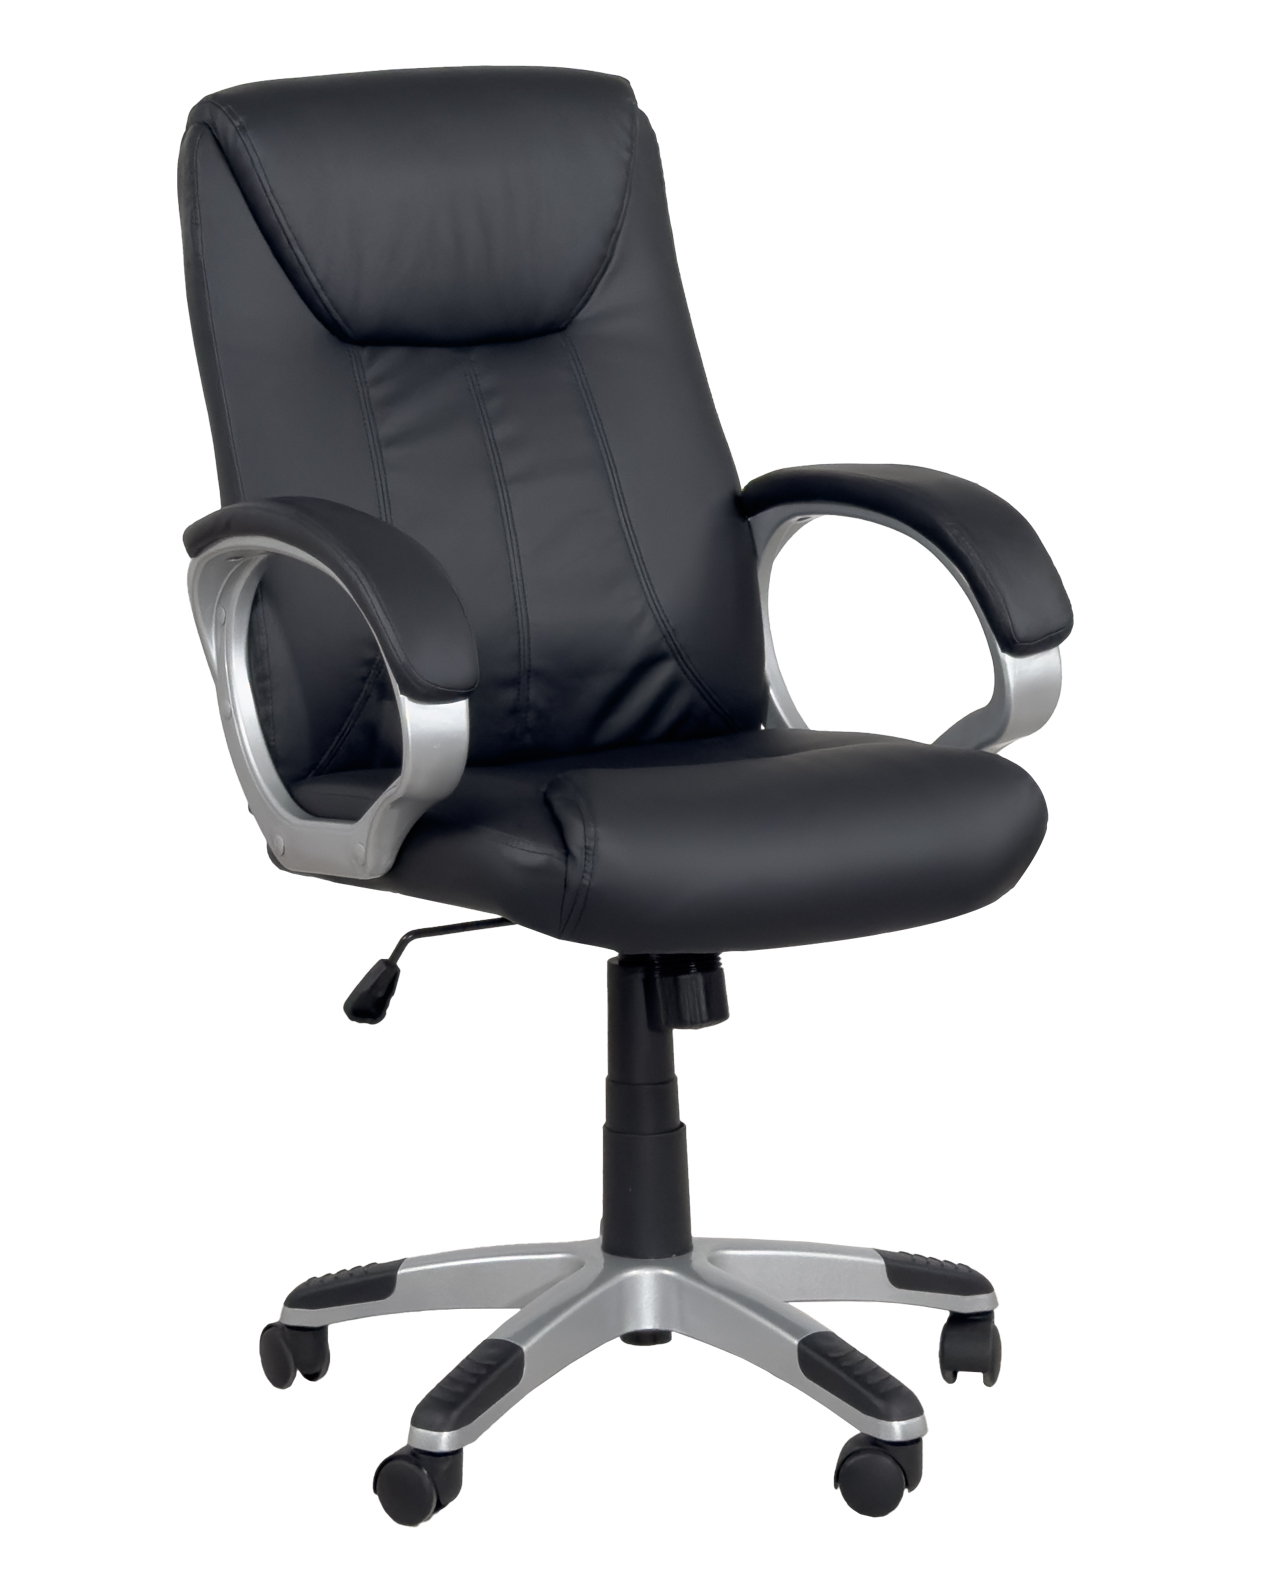 https://kayelles.com/wp-content/uploads/2020/01/chaise-bureau-ergonomique-bora-kayelles-elegante-confortable-noir-gris.jpg